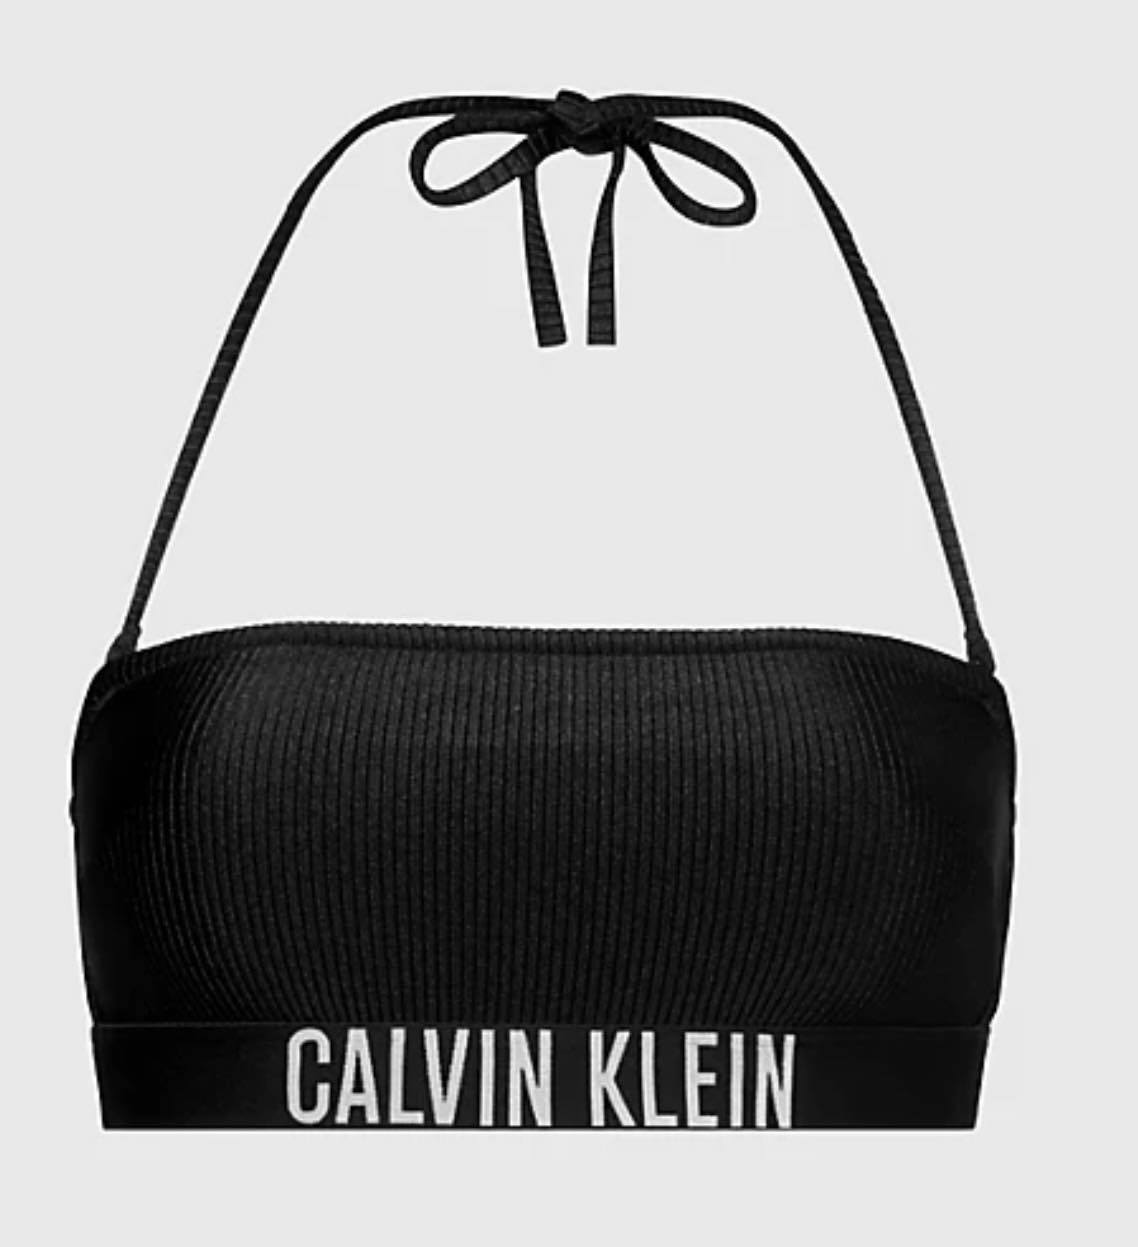 Calvin Klein BANDEU- RP - Black